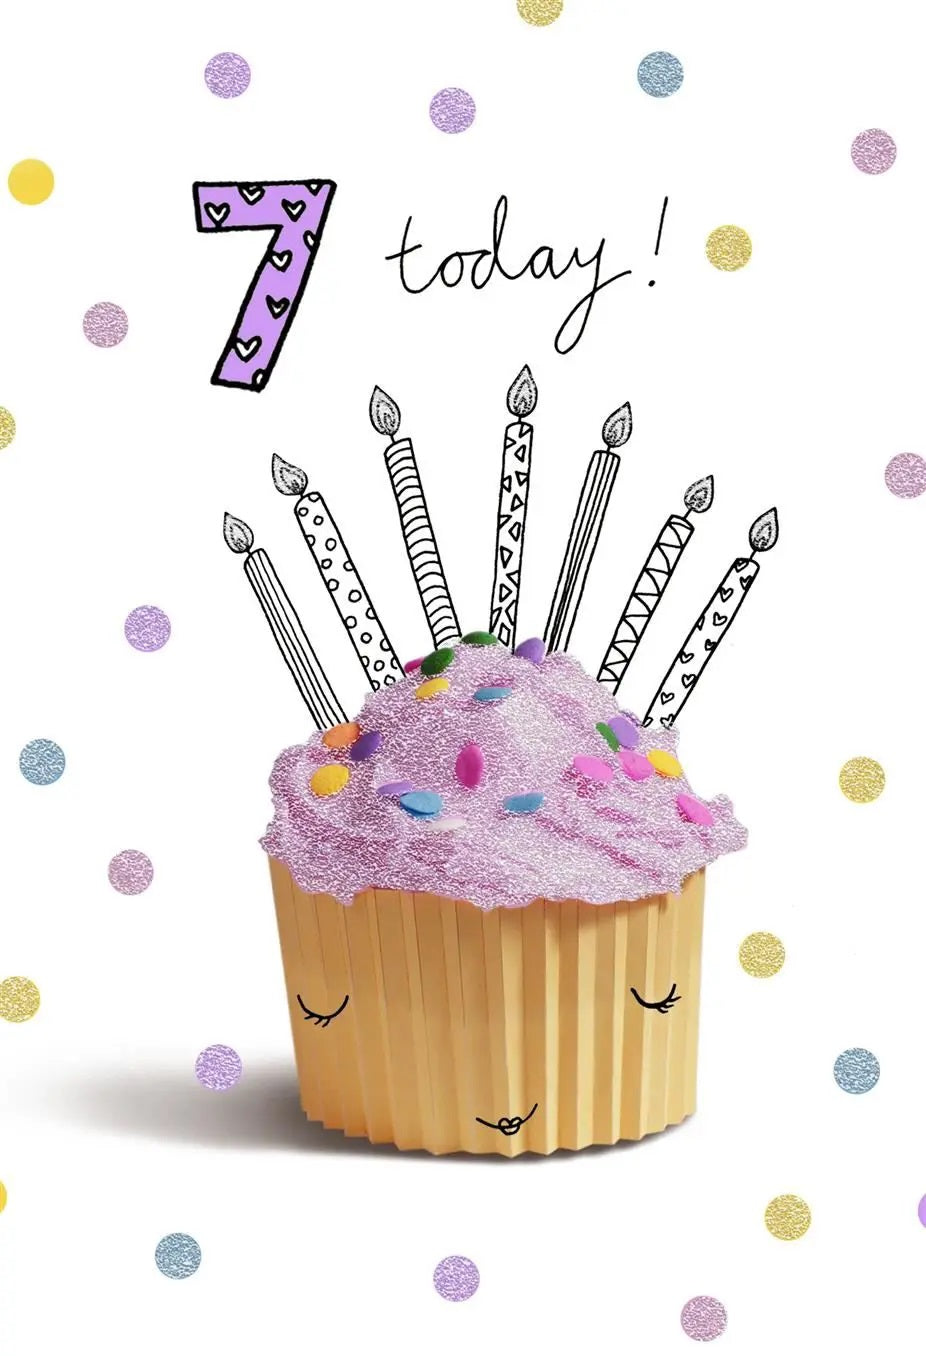 7th Birthday Card - A Pretty Cup Cake 